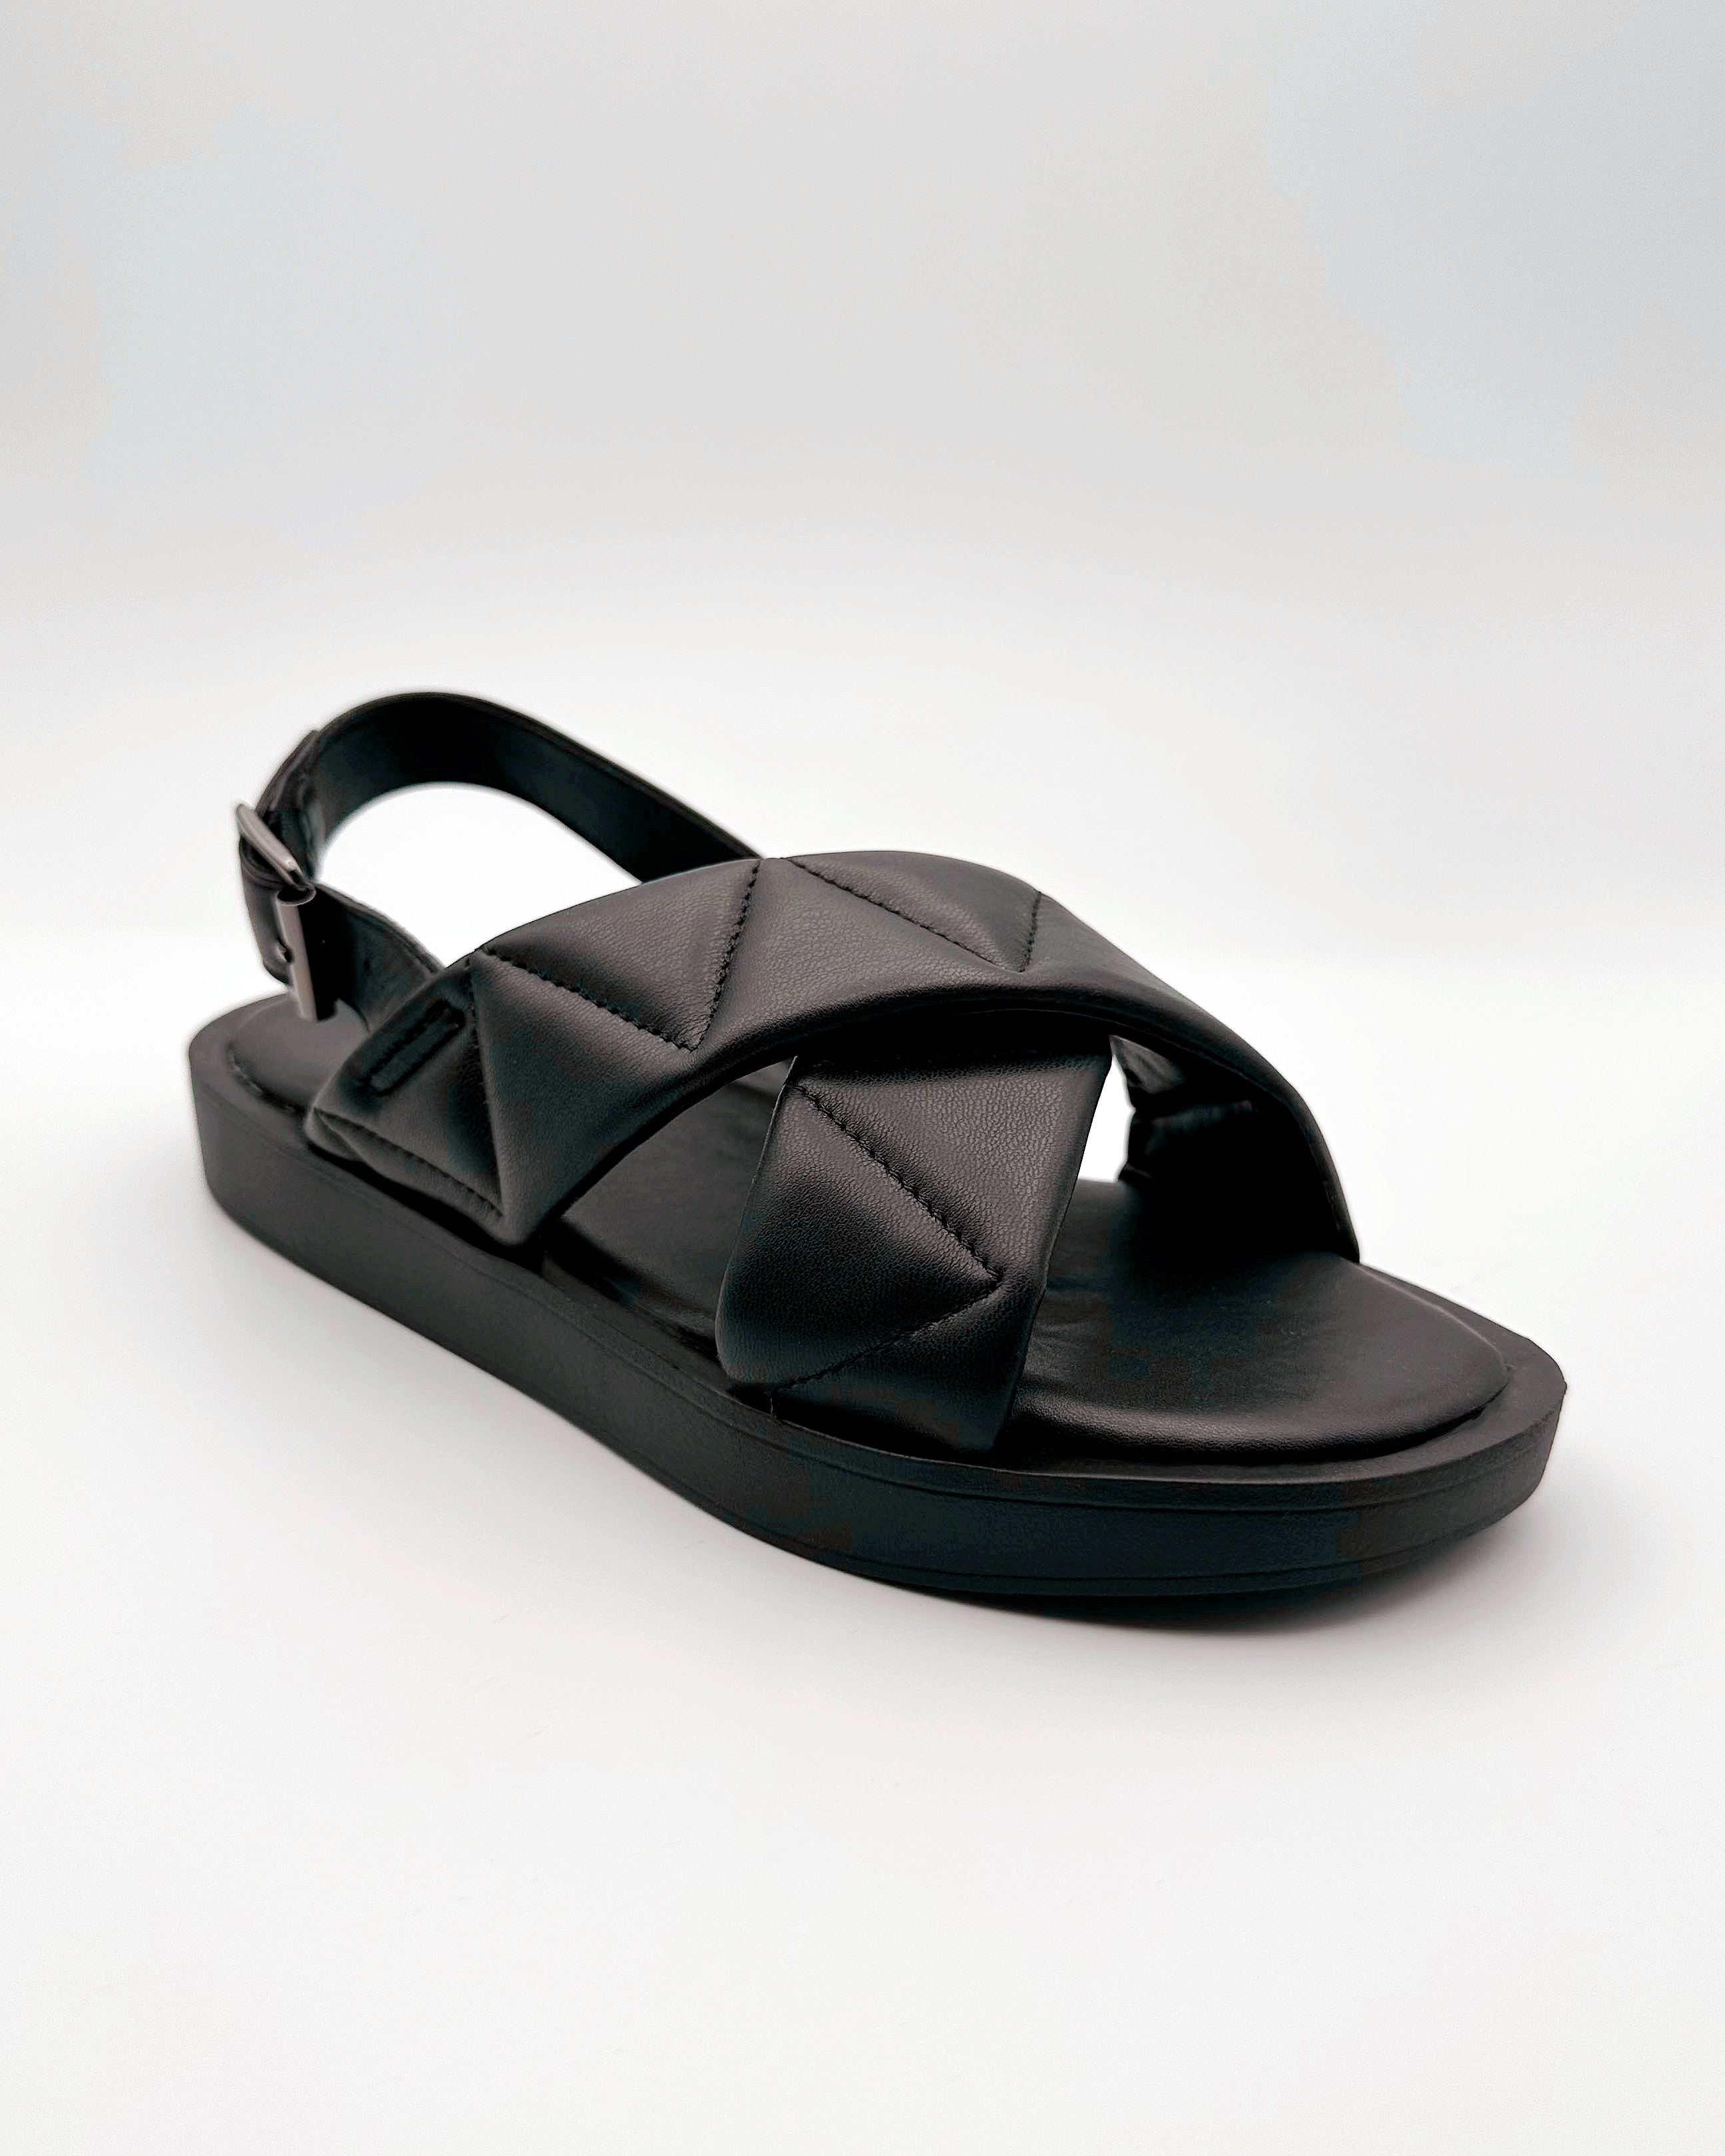 Cal Black Ankle Strap Sandals - Blackbird Boutique